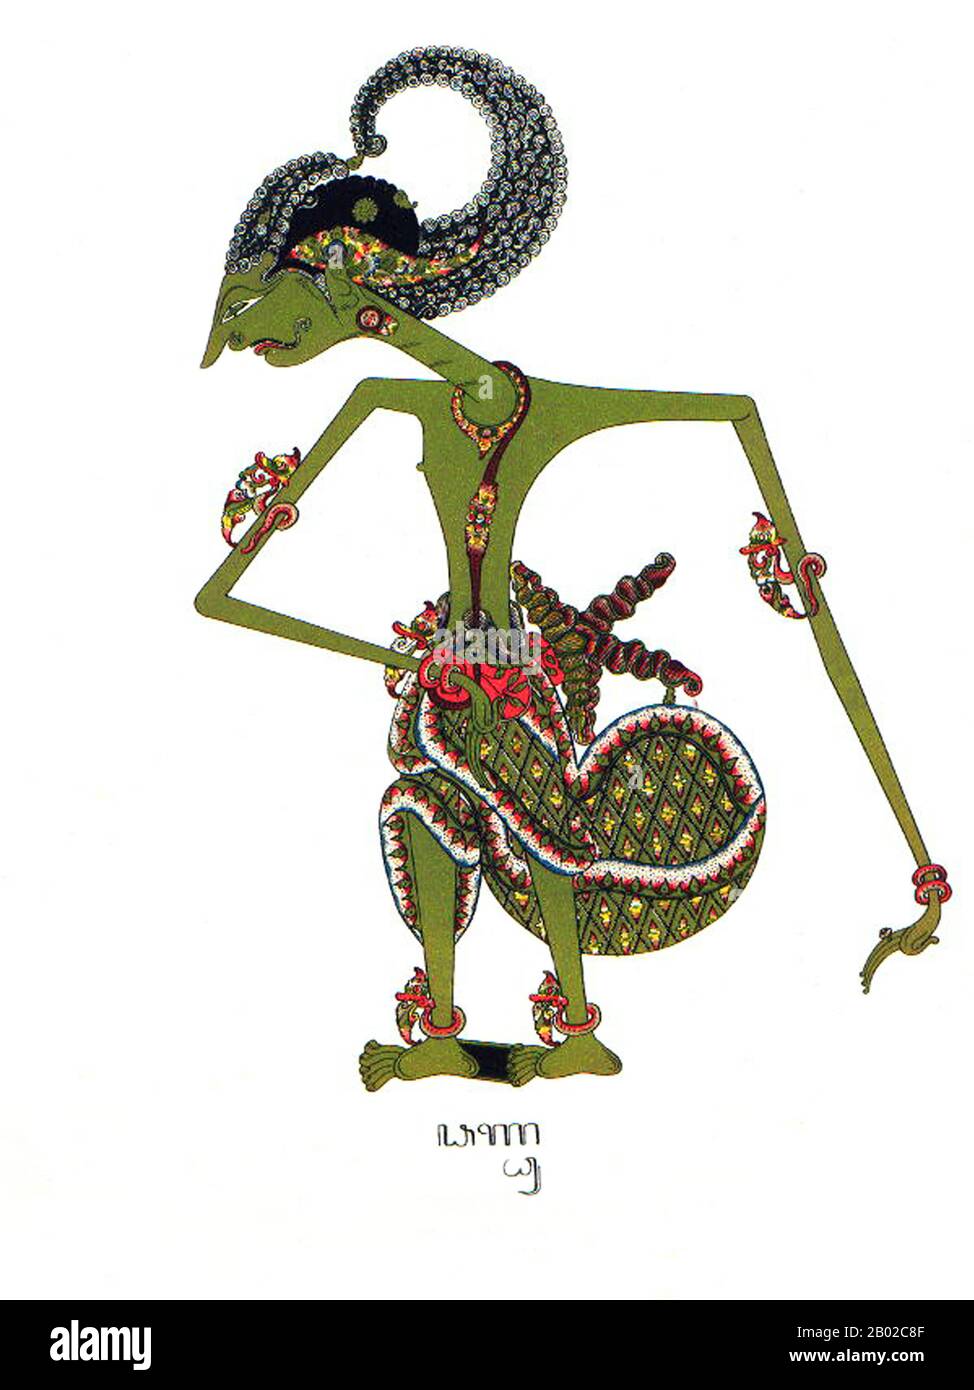 Wayang est un mot javanais pour des types particuliers de théâtre (littéralement « fard »). Lorsque le terme est utilisé pour désigner des types de théâtre de marionnettes, parfois la marionnette elle-même est appelée wayang. Les représentations du théâtre de marionnettes d'ombre sont accompagnées de gamelan en Java. Le 7 novembre 2003, l'UNESCO a désigné Wayang Kulit, un théâtre de marionnettes d'ombre et le plus connu du wayang indonésien, Comme Chef-D'Œuvre du patrimoine oral et immatériel de l'humanité. Banque D'Images